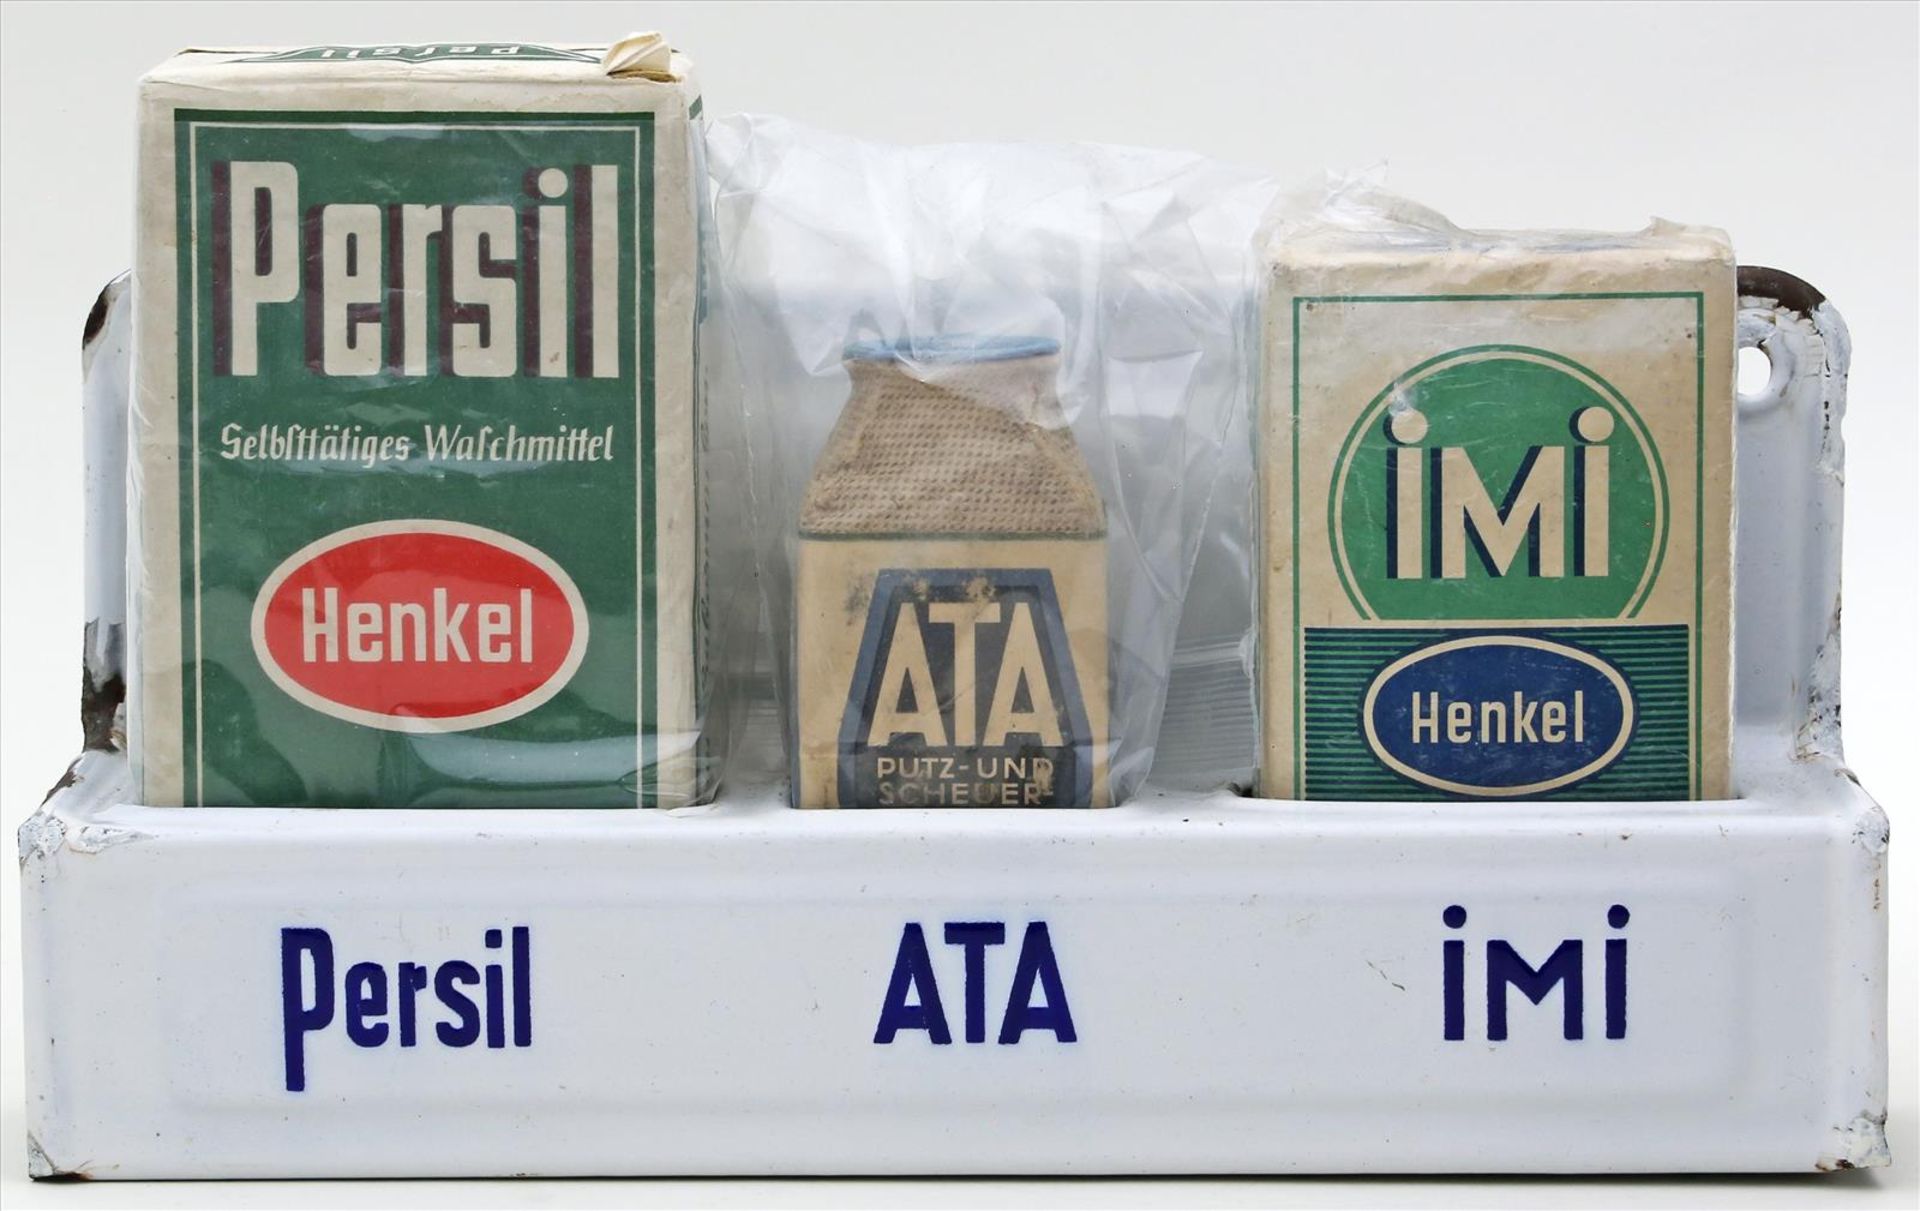 Emaillierter Wandbehälter mit Produktpackungen "PERSIL", "ATA" und "IMI".Jeweils Original